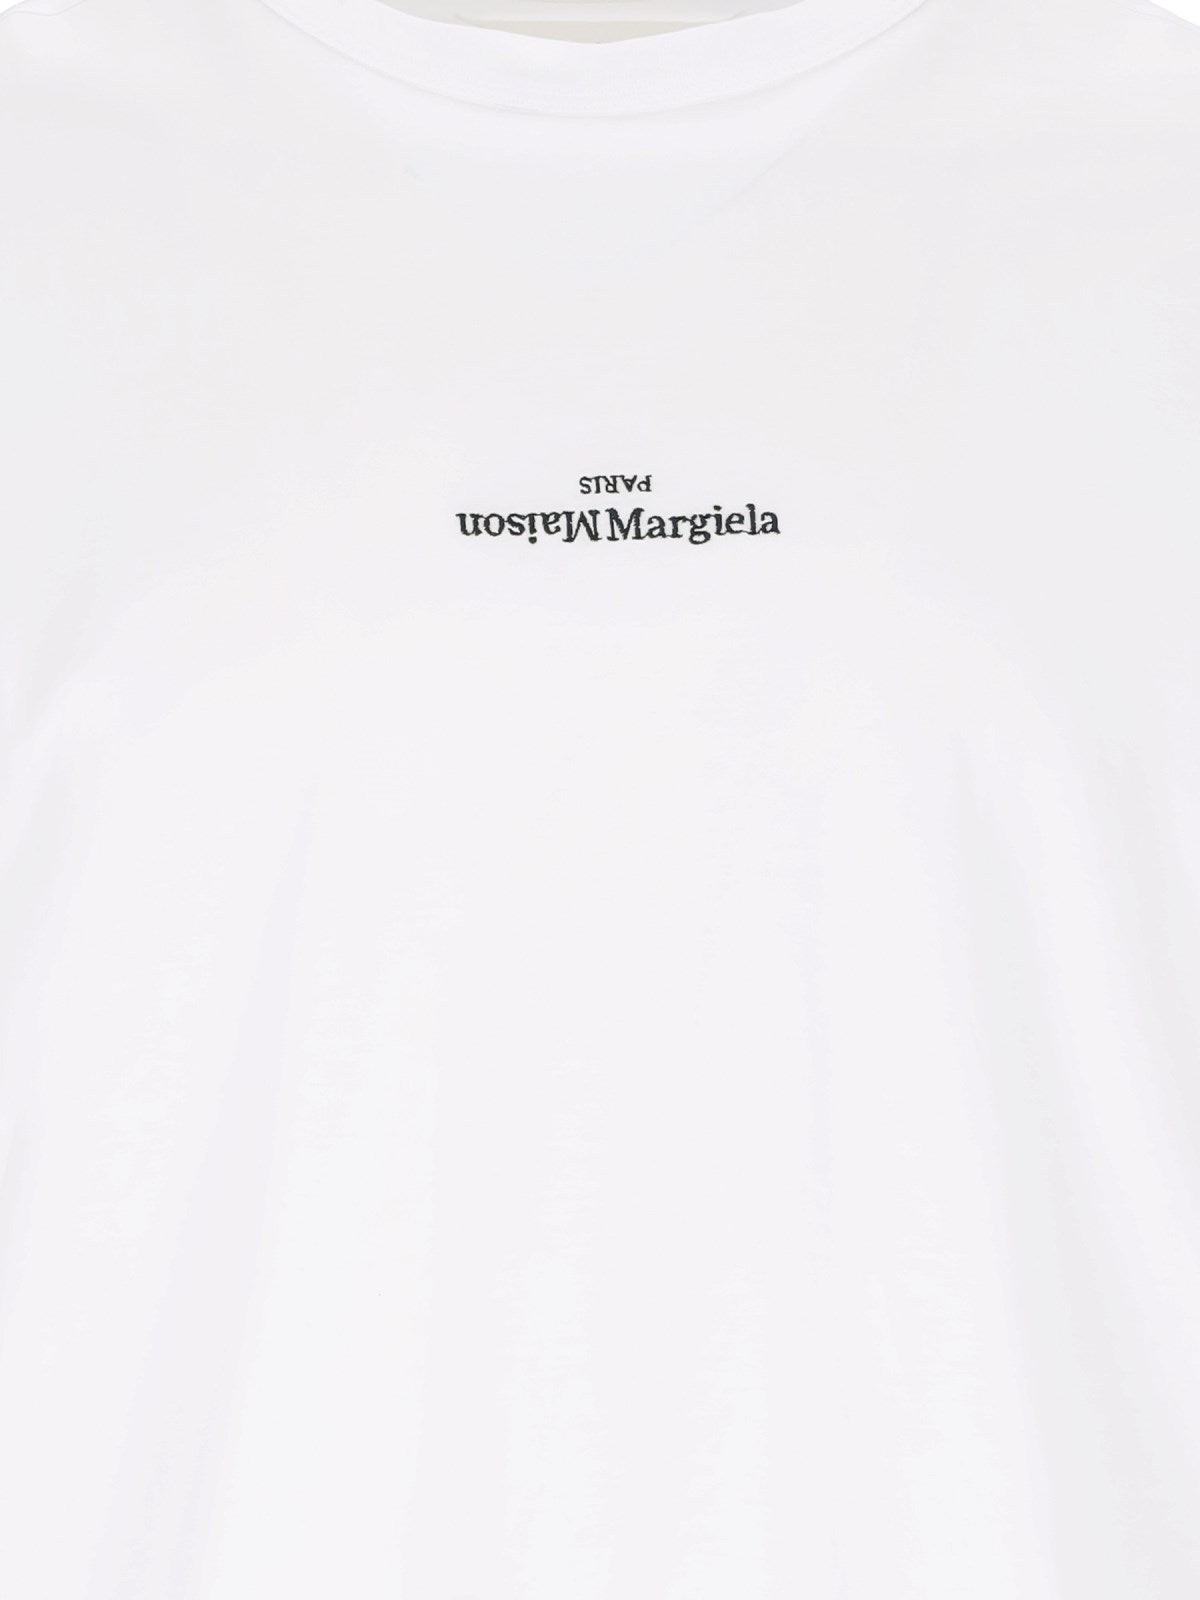 Maison Margiela T-Shirt "distorted logo"-t-shirt-Maison Margiela-T-shirt "distorted logo" Maison Margiela, in cotone bianco, girocollo, maniche corte, ricamo logo nero petto, orlo dritto.-Dresso